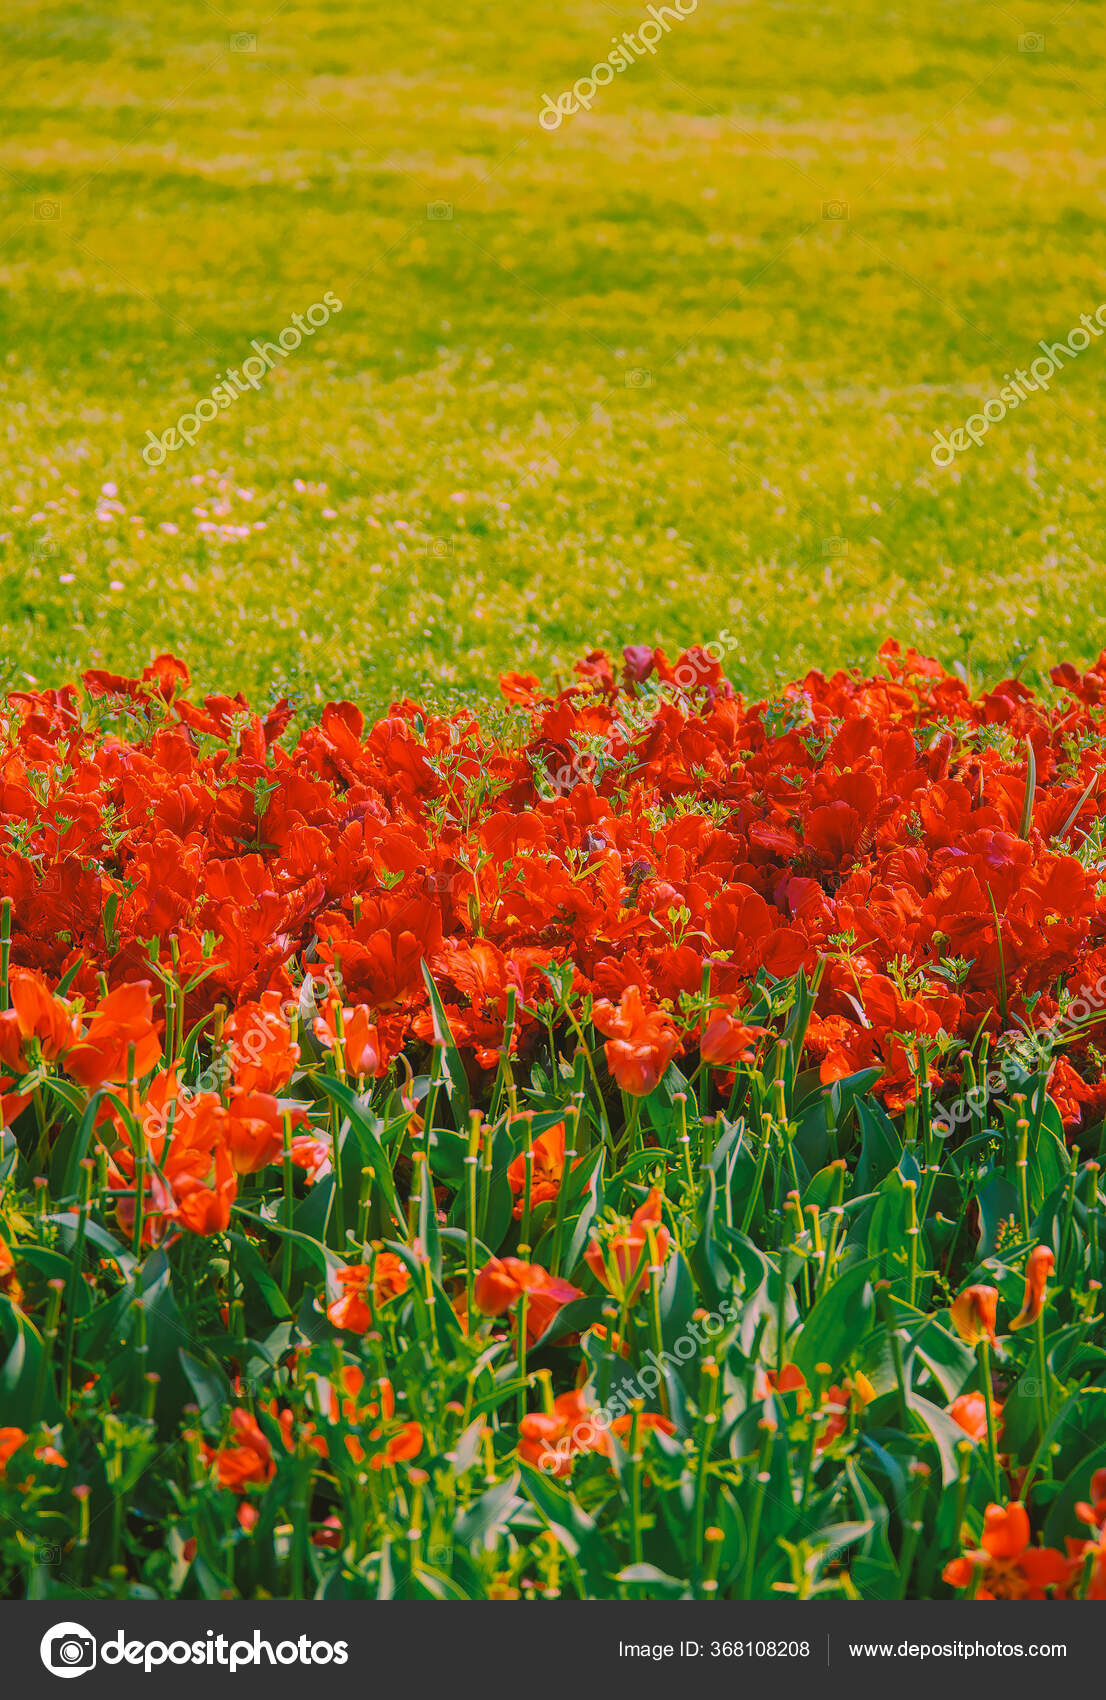 Hoa đỏ tulip nở nụ hình nền mùa xuân: Những bông hoa đỏ tulip nở rực rỡ trên nền mùa xuân sẽ khiến bạn cảm thấy như được chạm vào vẻ đẹp thiên nhiên ngay trên bàn làm việc của mình. Mỗi lần nhìn vào hình ảnh này, chúng ta đều cảm thấy tươi mới và bình an trong tâm hồn.